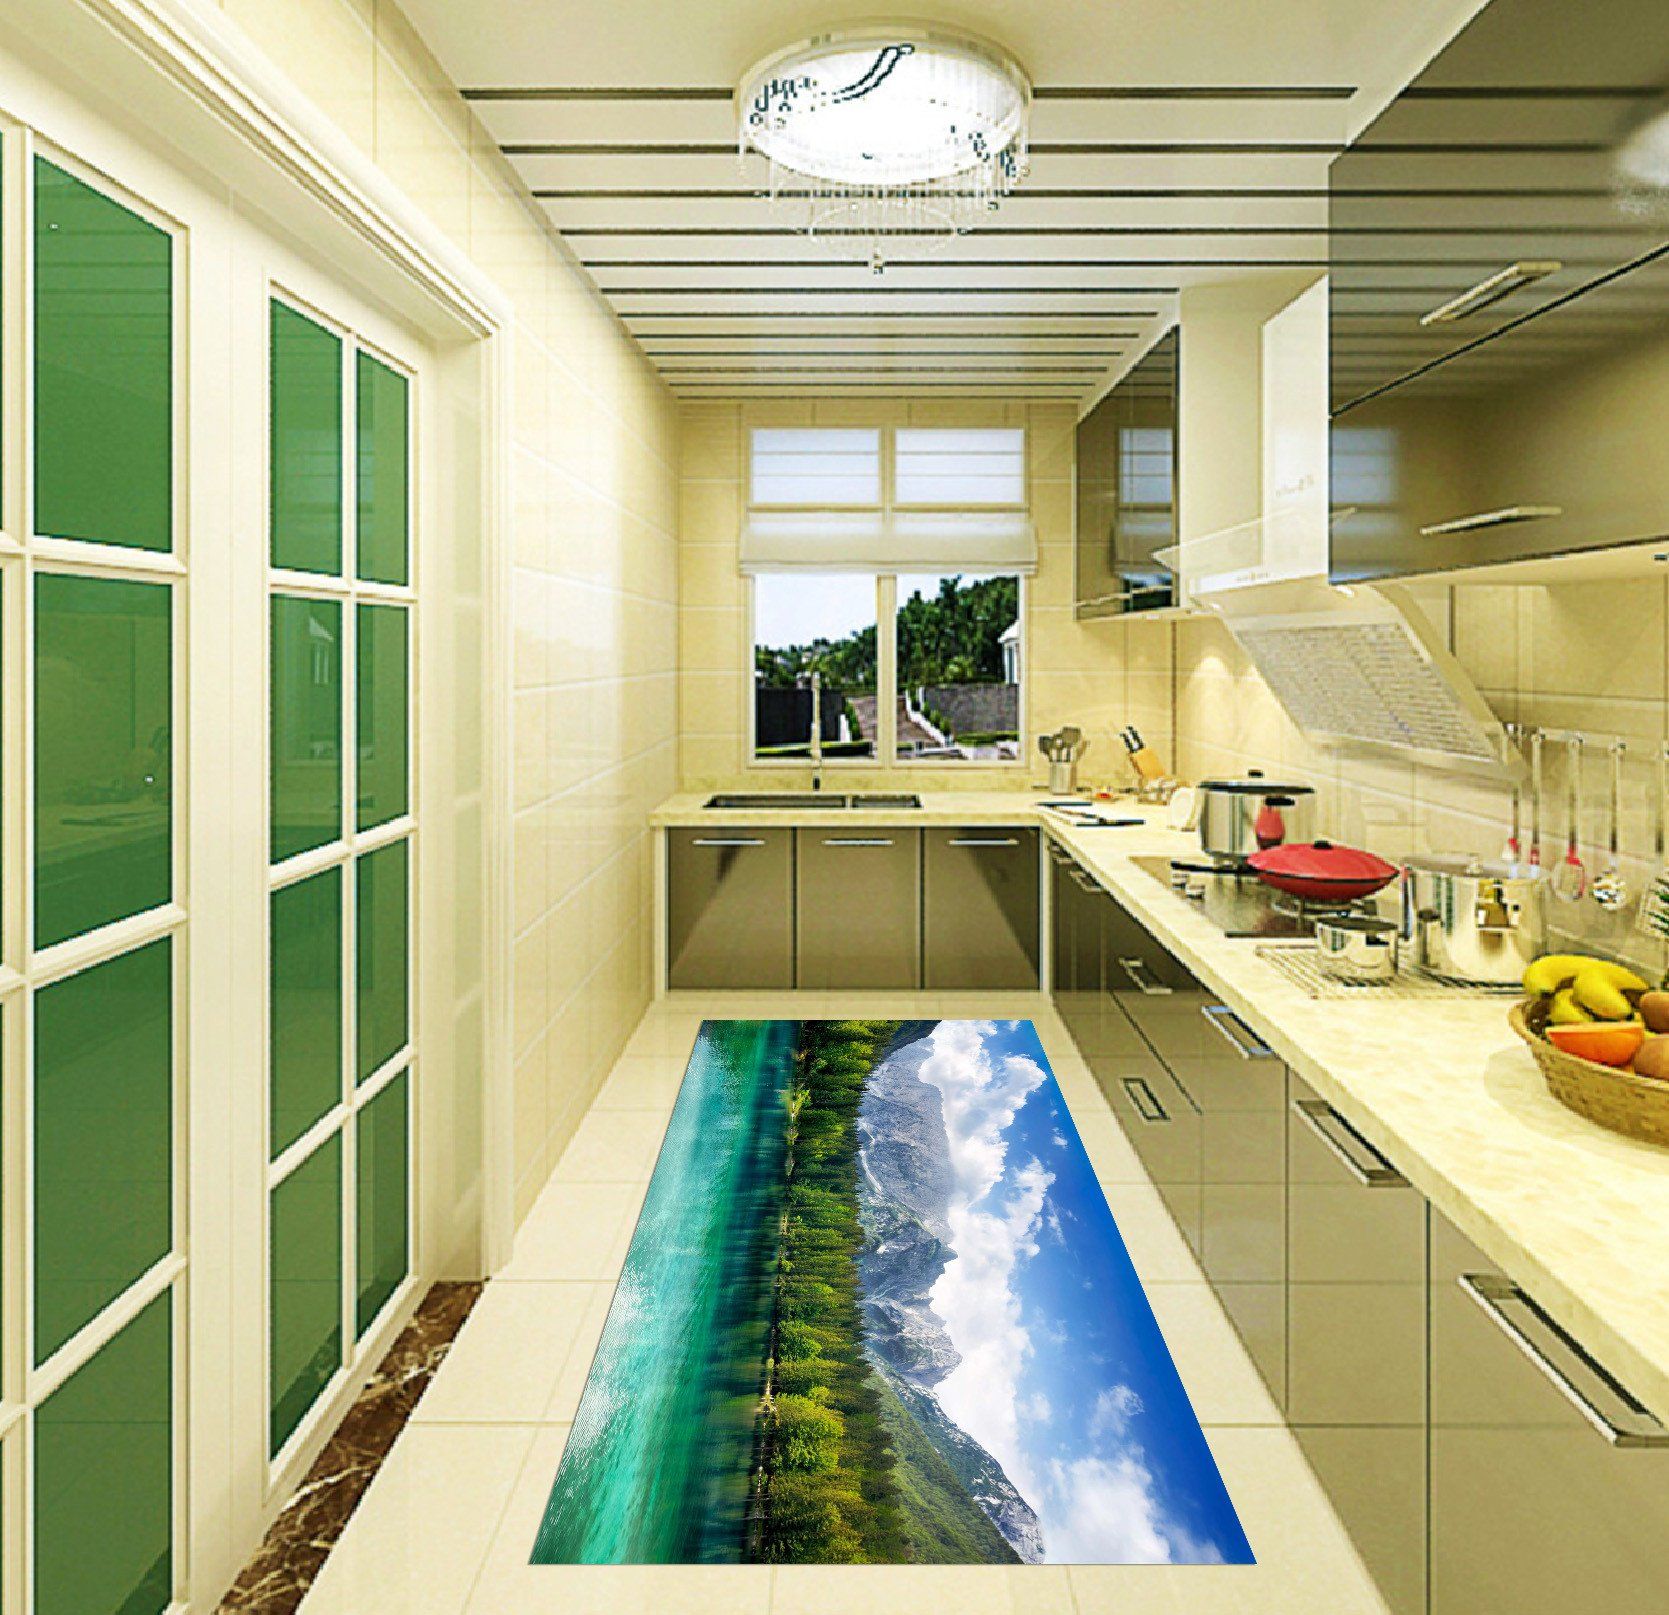 3D Mountain Forest Lake Kitchen Mat Floor Mural Wallpaper AJ Wallpaper 